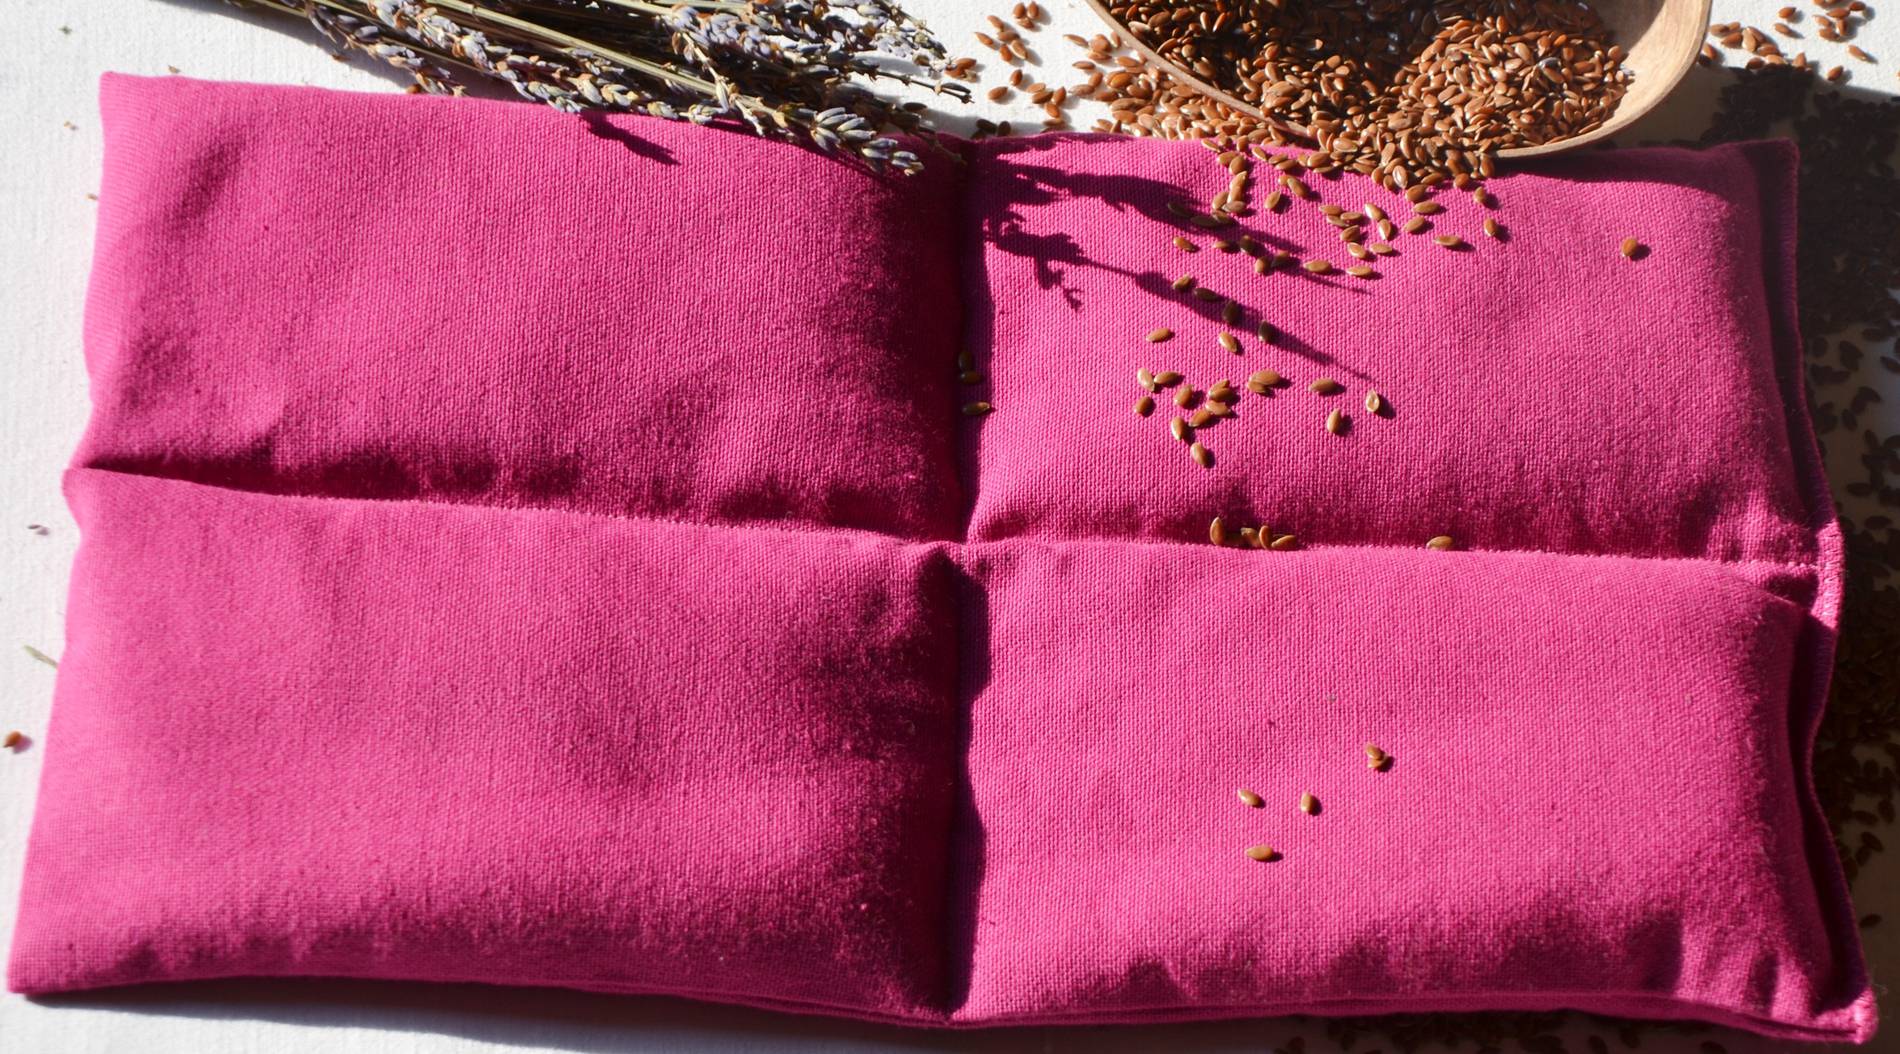 Fil en Poche- Coussin bouillotte sèche en graines de lin bio et lavande bio -rose